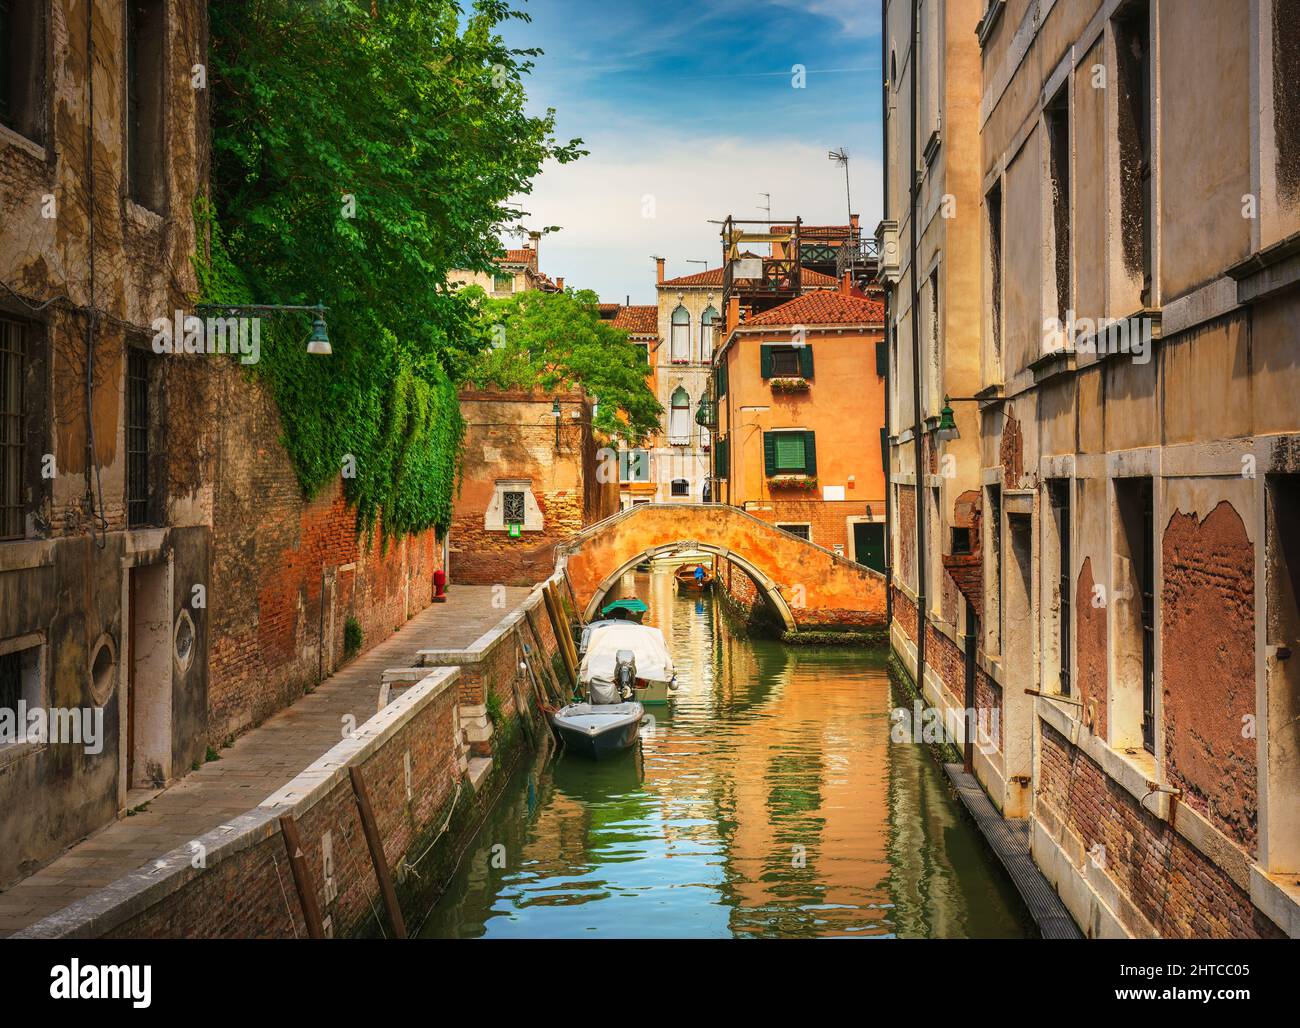 Stadtbild von Venedig, Wasserkanal, Brücke und traditionelle Gebäude. Region Venetien, Italien, Europa. Stockfoto